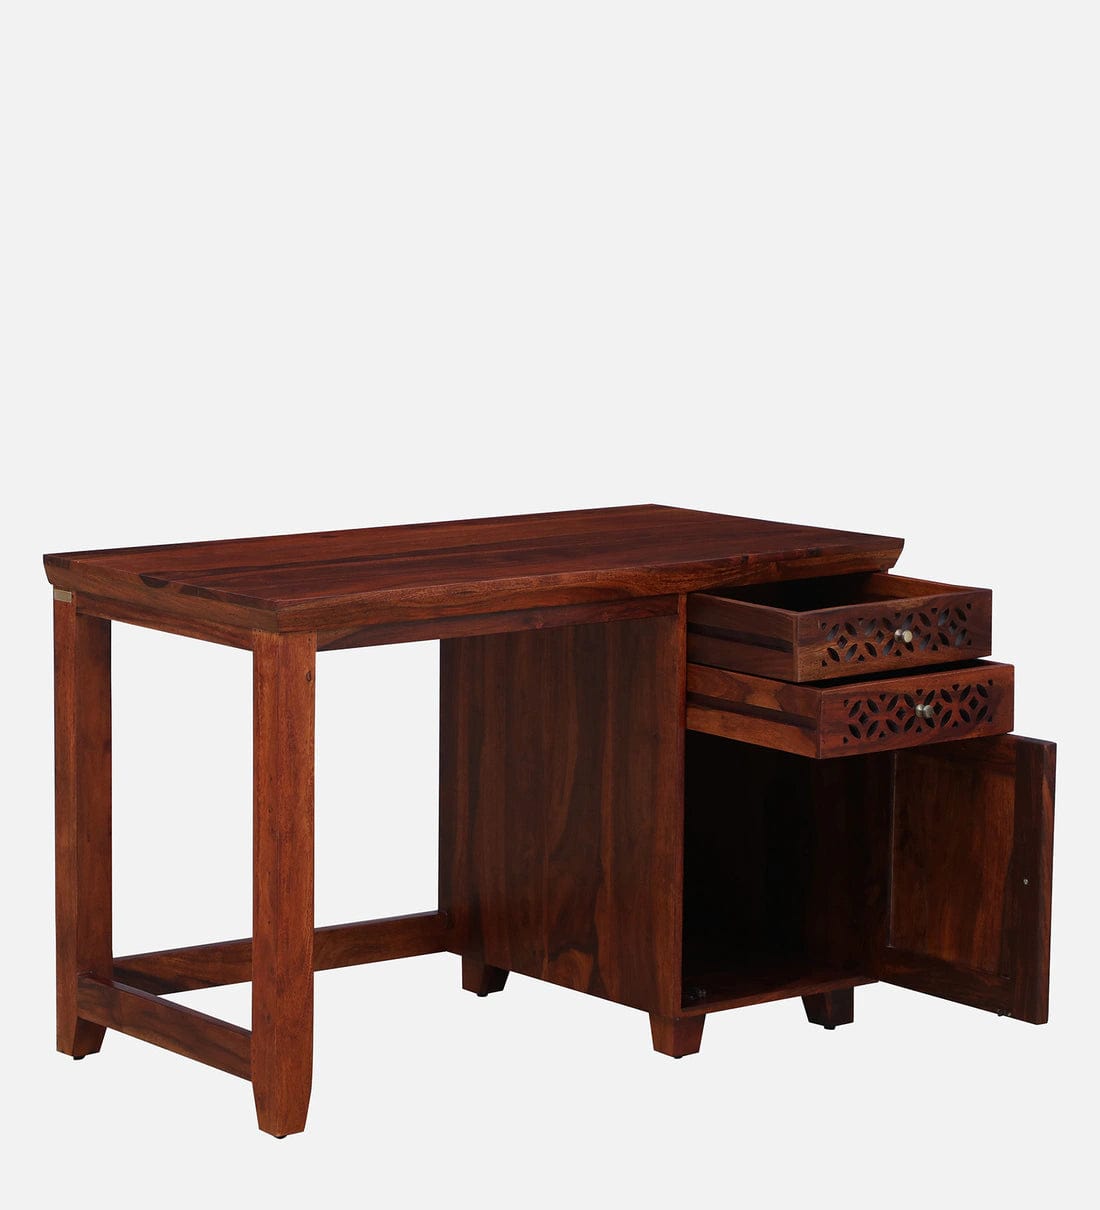 Parnika Sheesham Wood Writing Table In Honey Oak Finish,